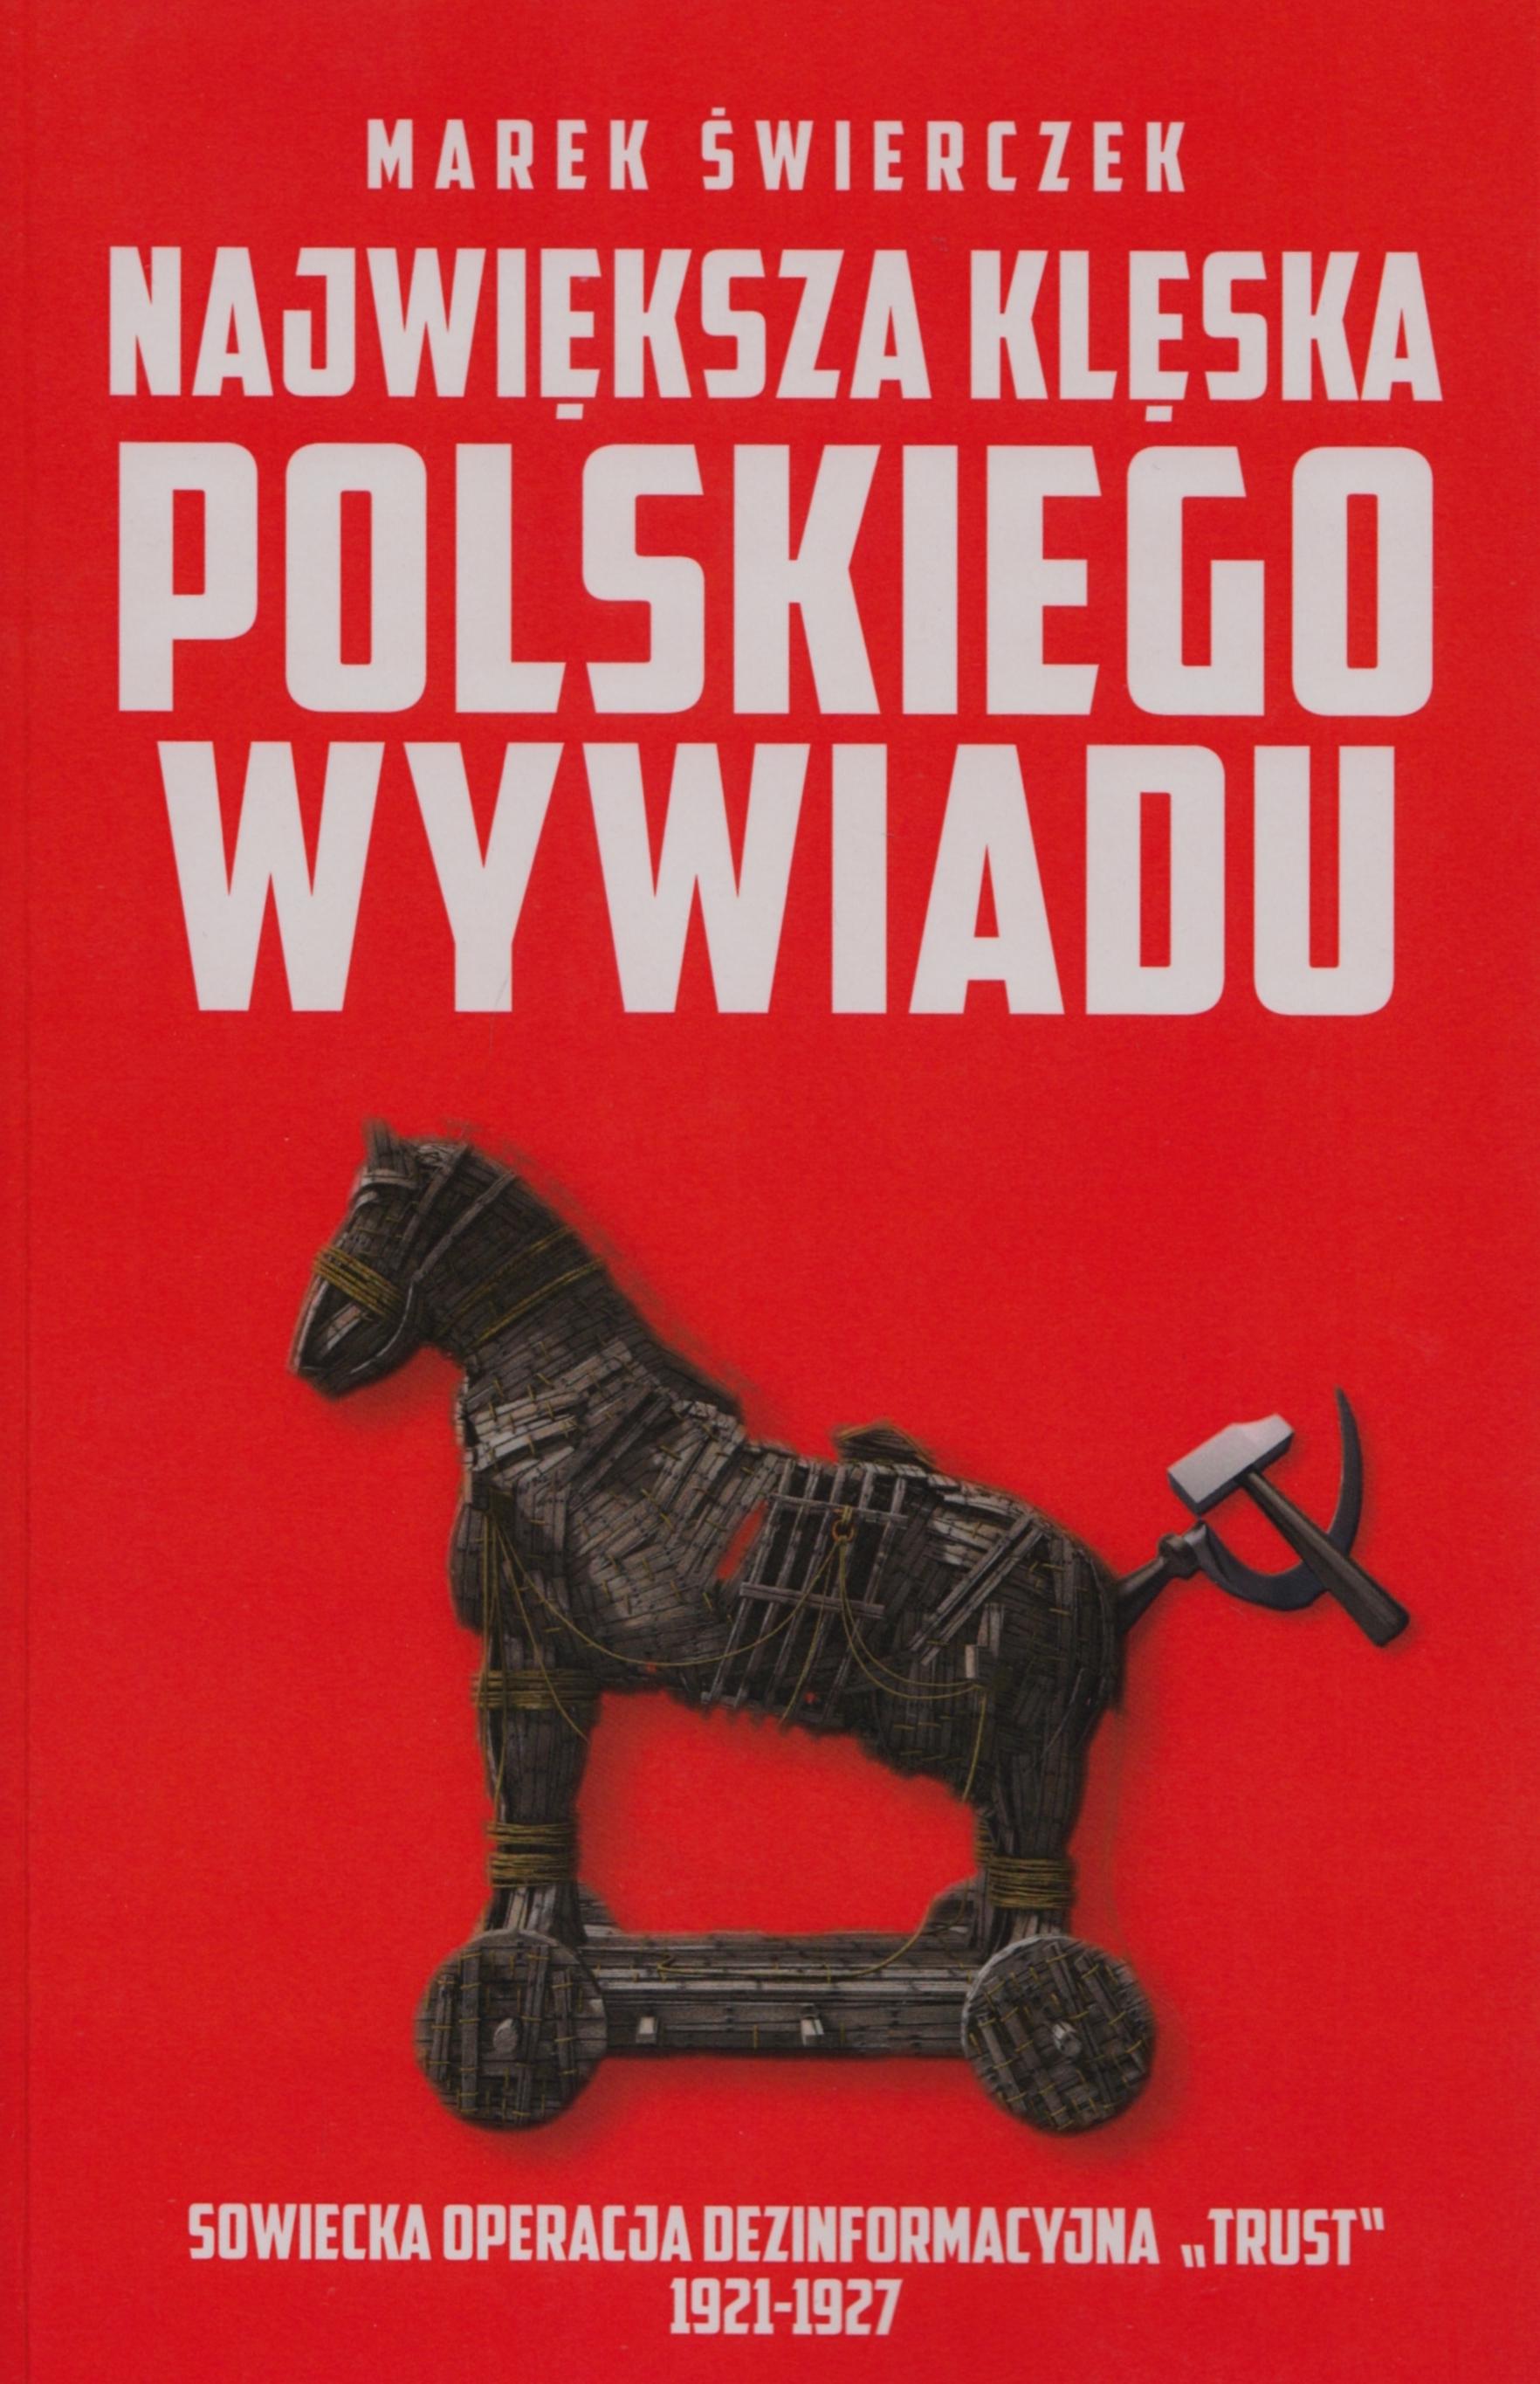 Największa klęska polskiego wywiadu. Sowiecka akcja dezinformacyjna „Trust” 1921-1927